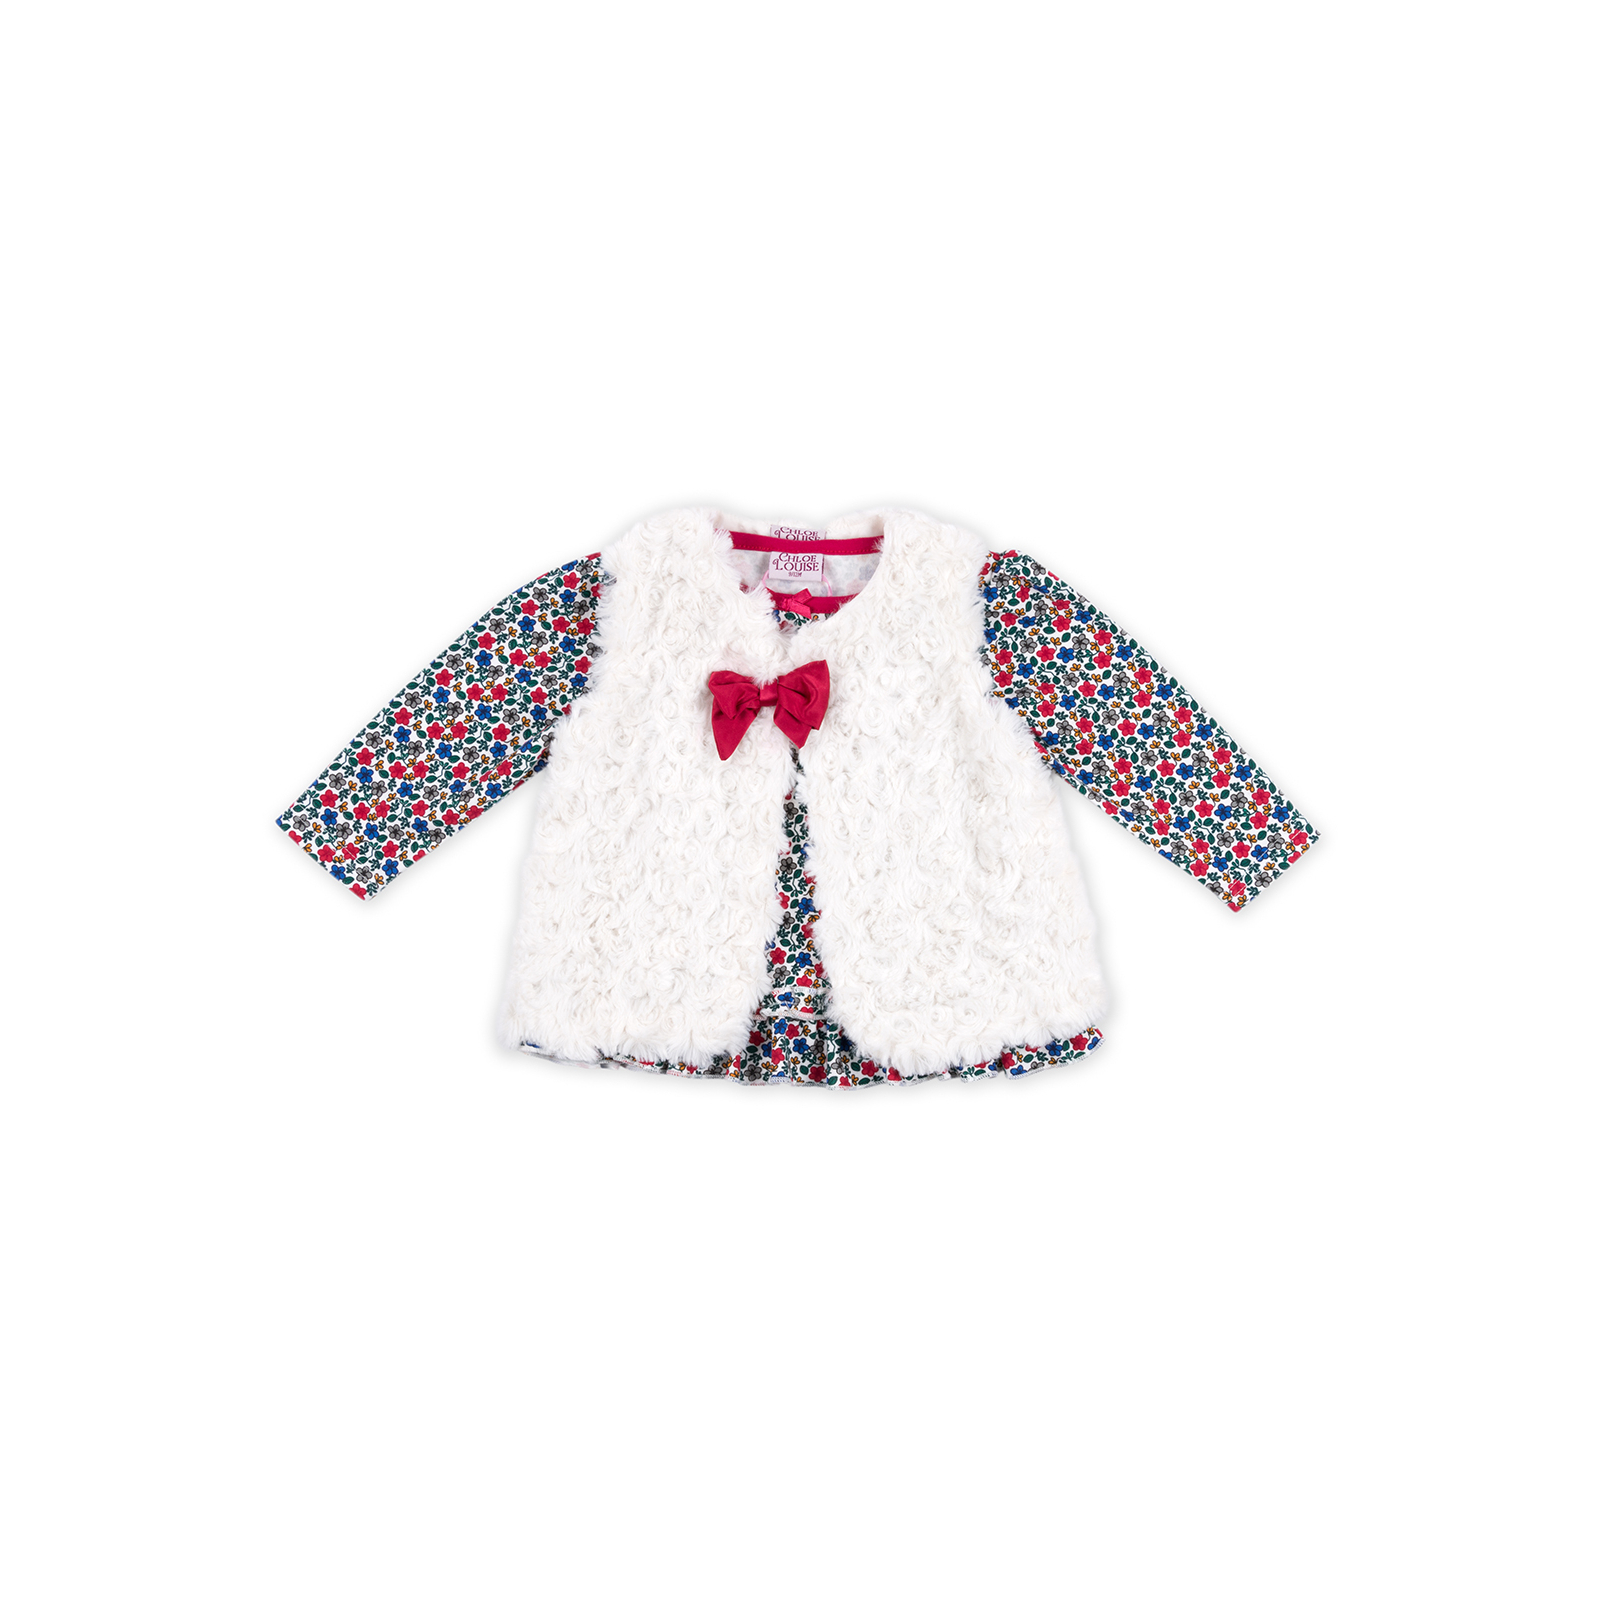 Набір дитячого одягу Luvena Fortuna для девочек: кофточка, красные штанишки и меховая жилетка (G8070.9-12) зображення 4